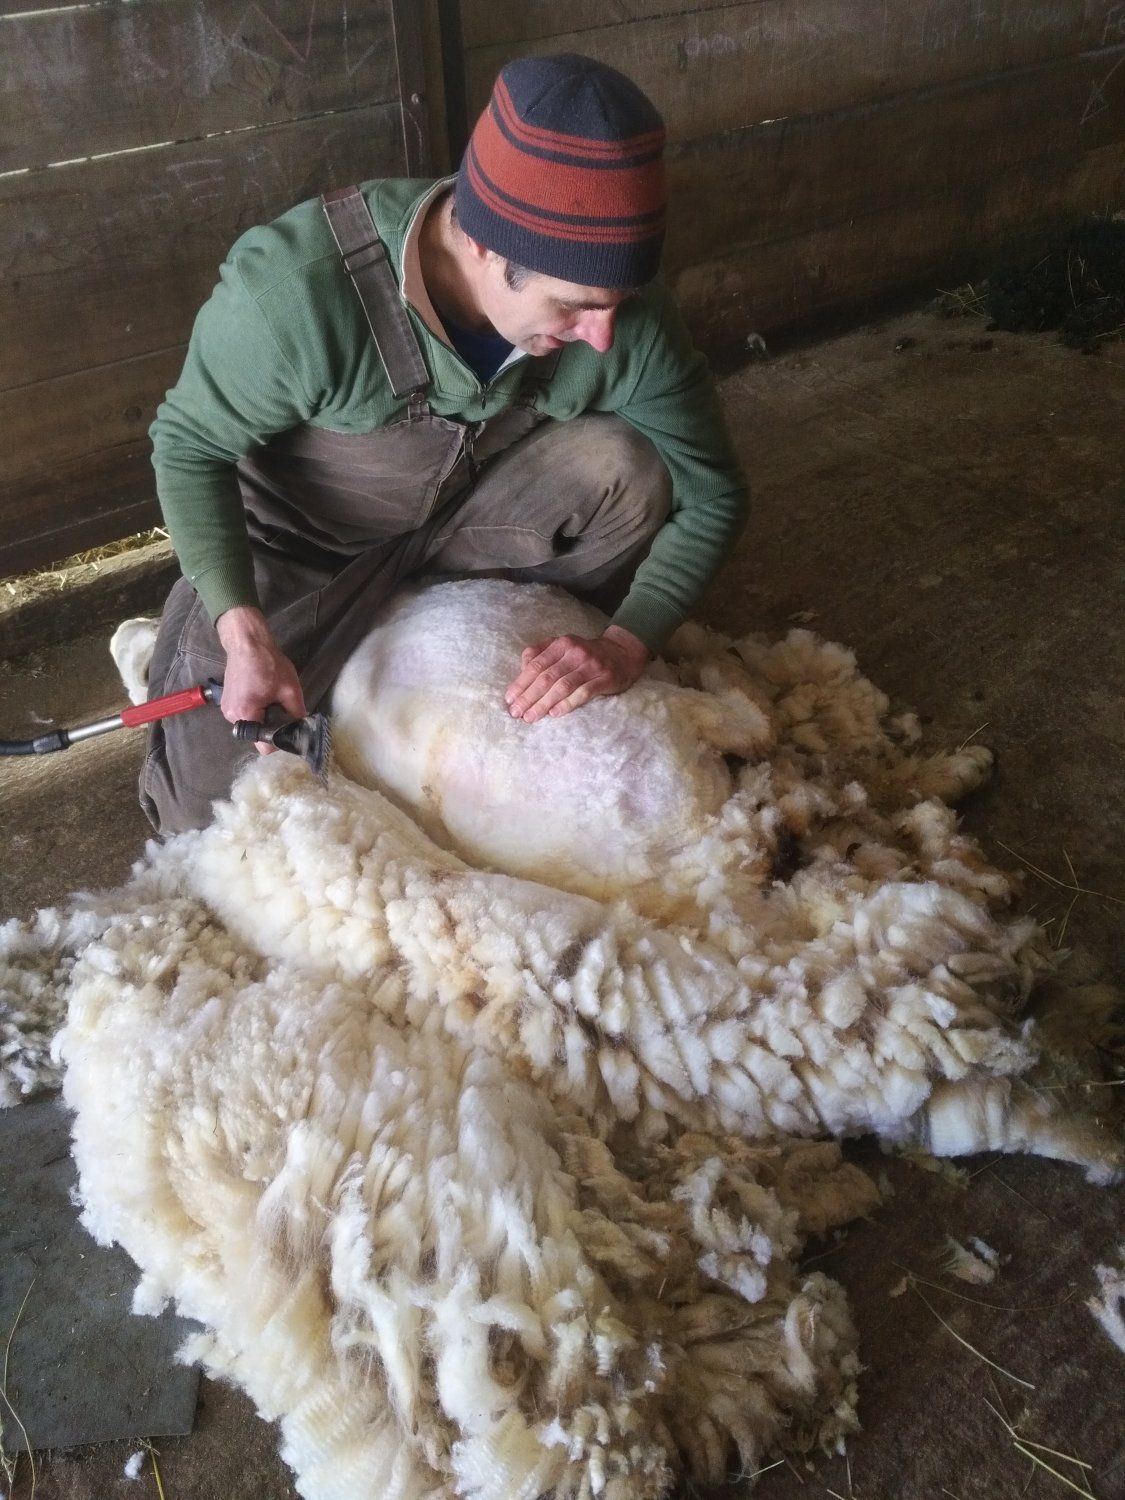 Next Happening: Sheep shearing